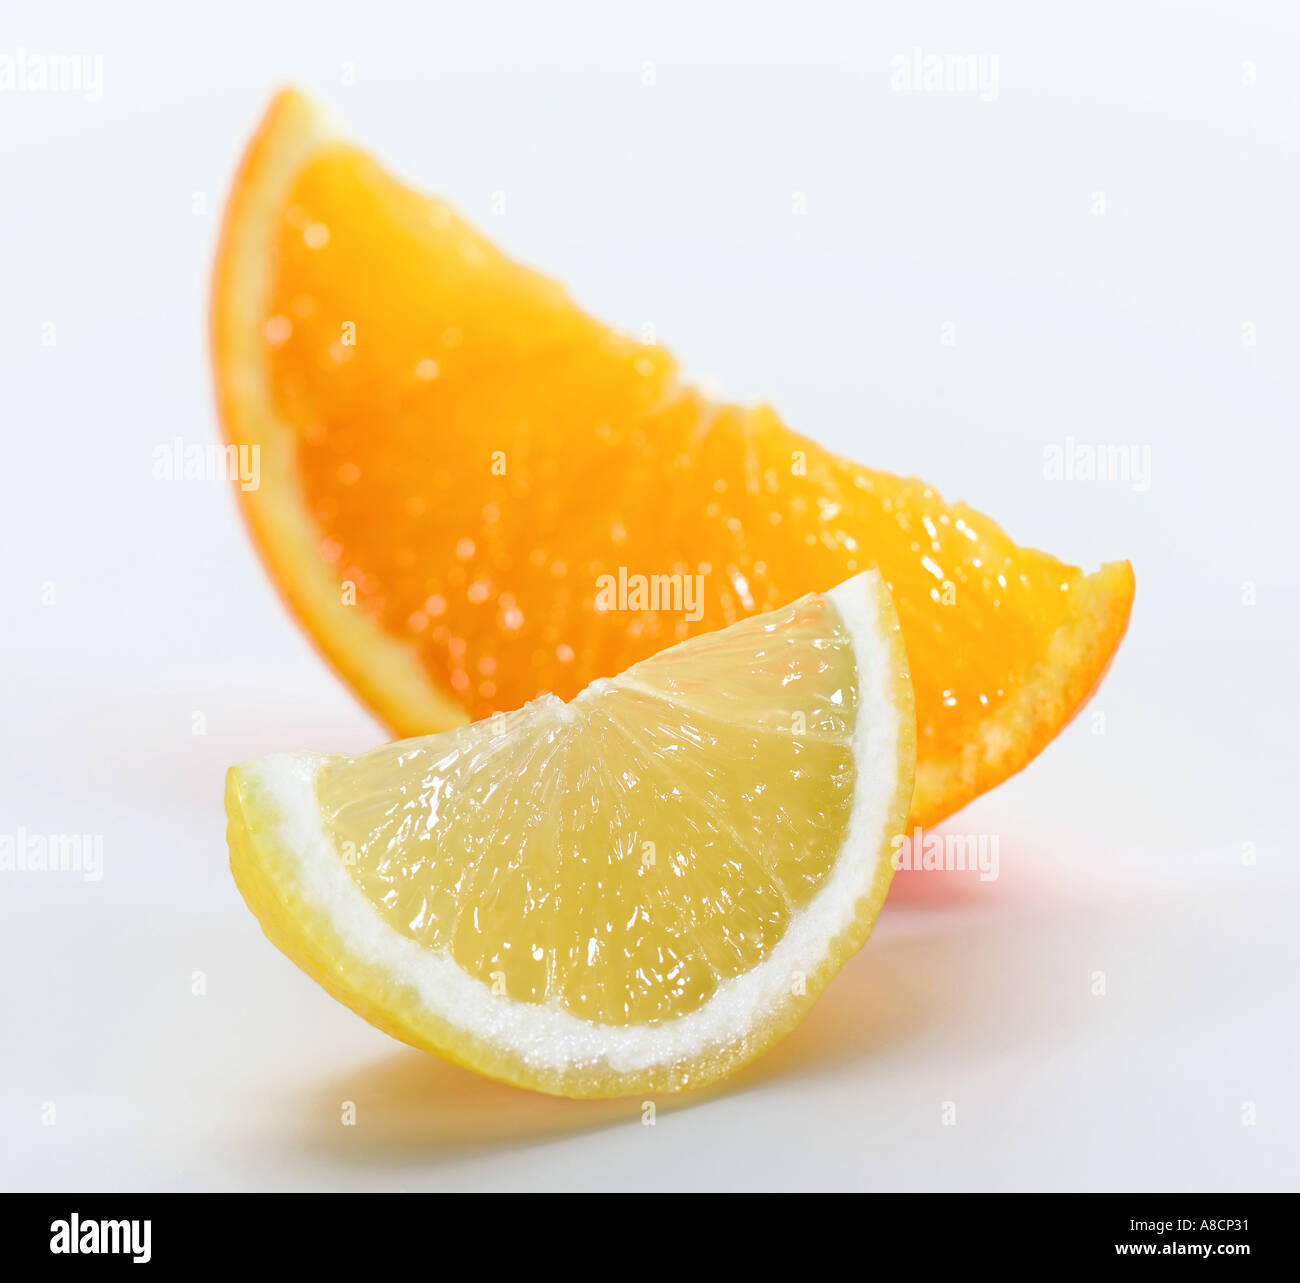 orange and lemon Stock Photo